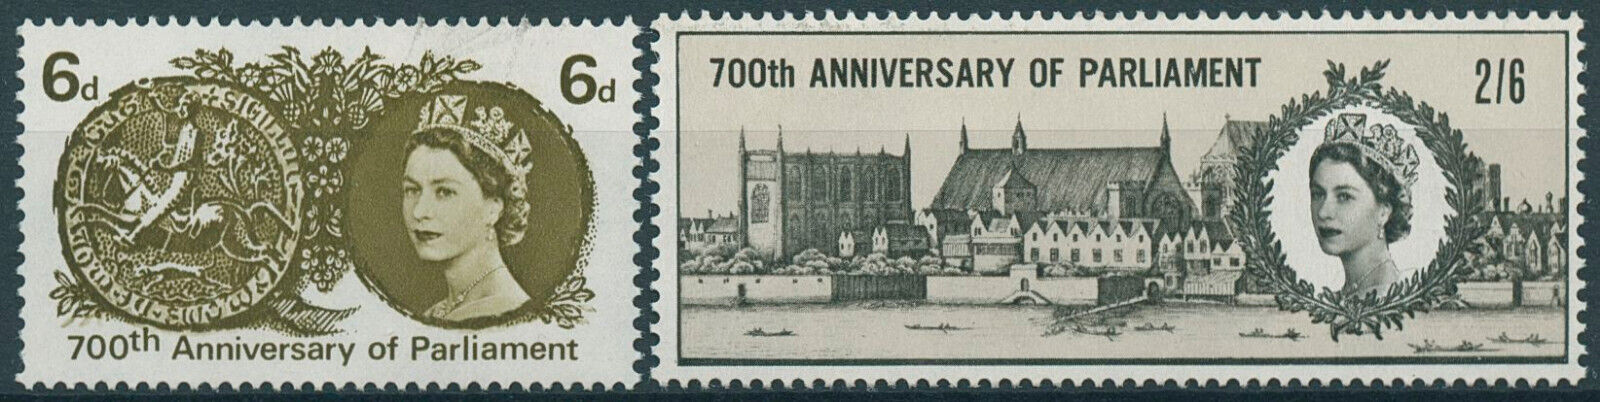 GB 1965 MNH Architecture Stamps Simon de Montfort's Parliament 700 Years 2v Set